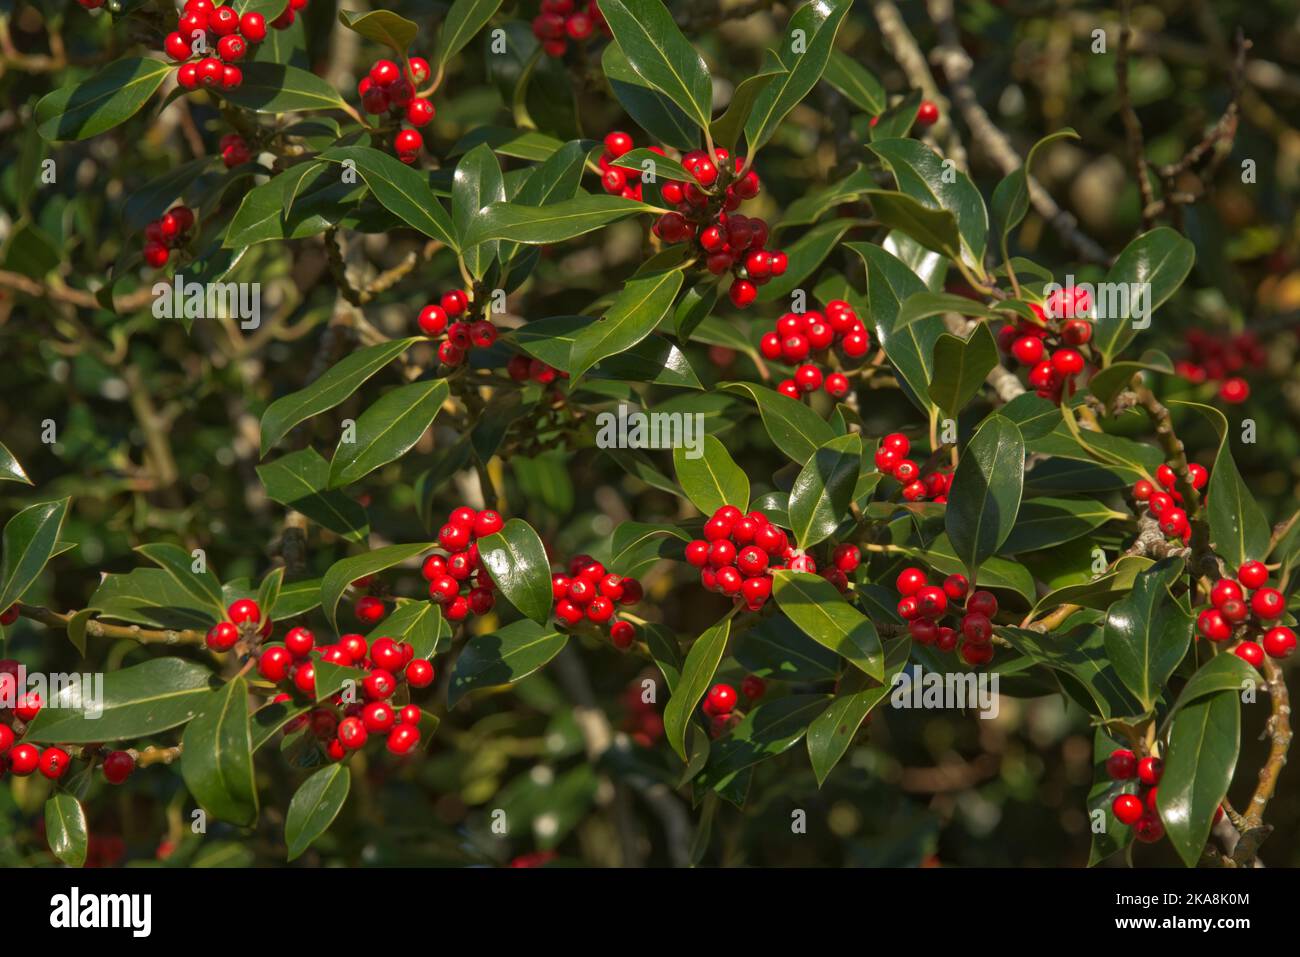 Reife rote Stechpalme (Ilex aquifolium) Beeren unter den oberen, nicht-stacheligen Blättern am Baum im Frühherbst, Berkshire, Oktober Stockfoto